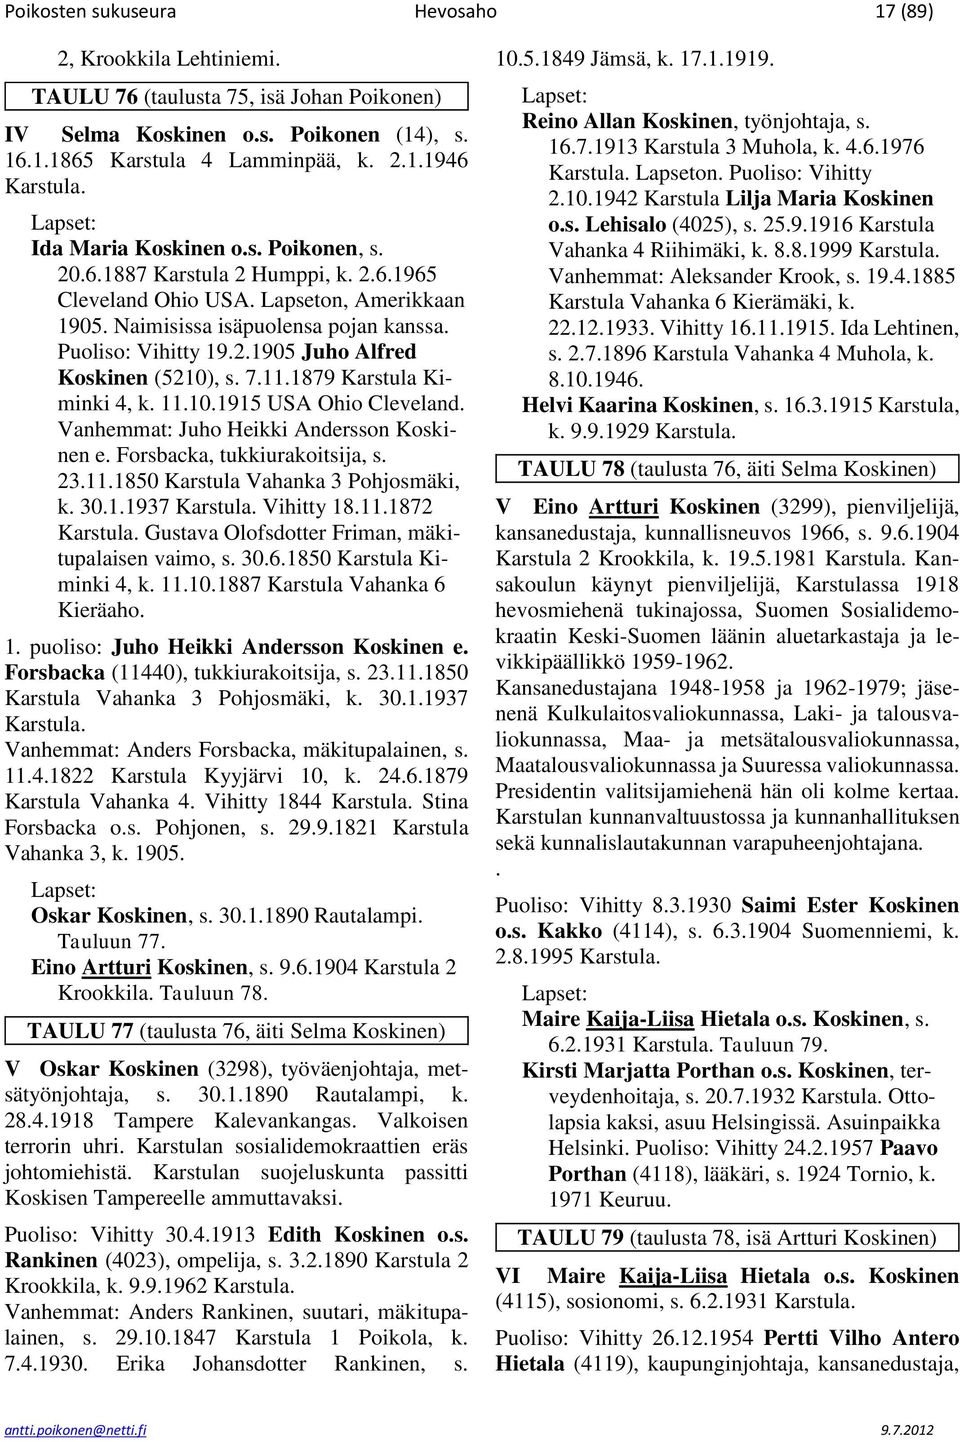 7.11.1879 Karstula Kiminki 4, k. 11.10.1915 USA Ohio Cleveland. Vanhemmat: Juho Heikki Andersson Koskinen e. Forsbacka, tukkiurakoitsija, s. 23.11.1850 Karstula Vahanka 3 Pohjosmäki, k. 30.1.1937 Karstula.